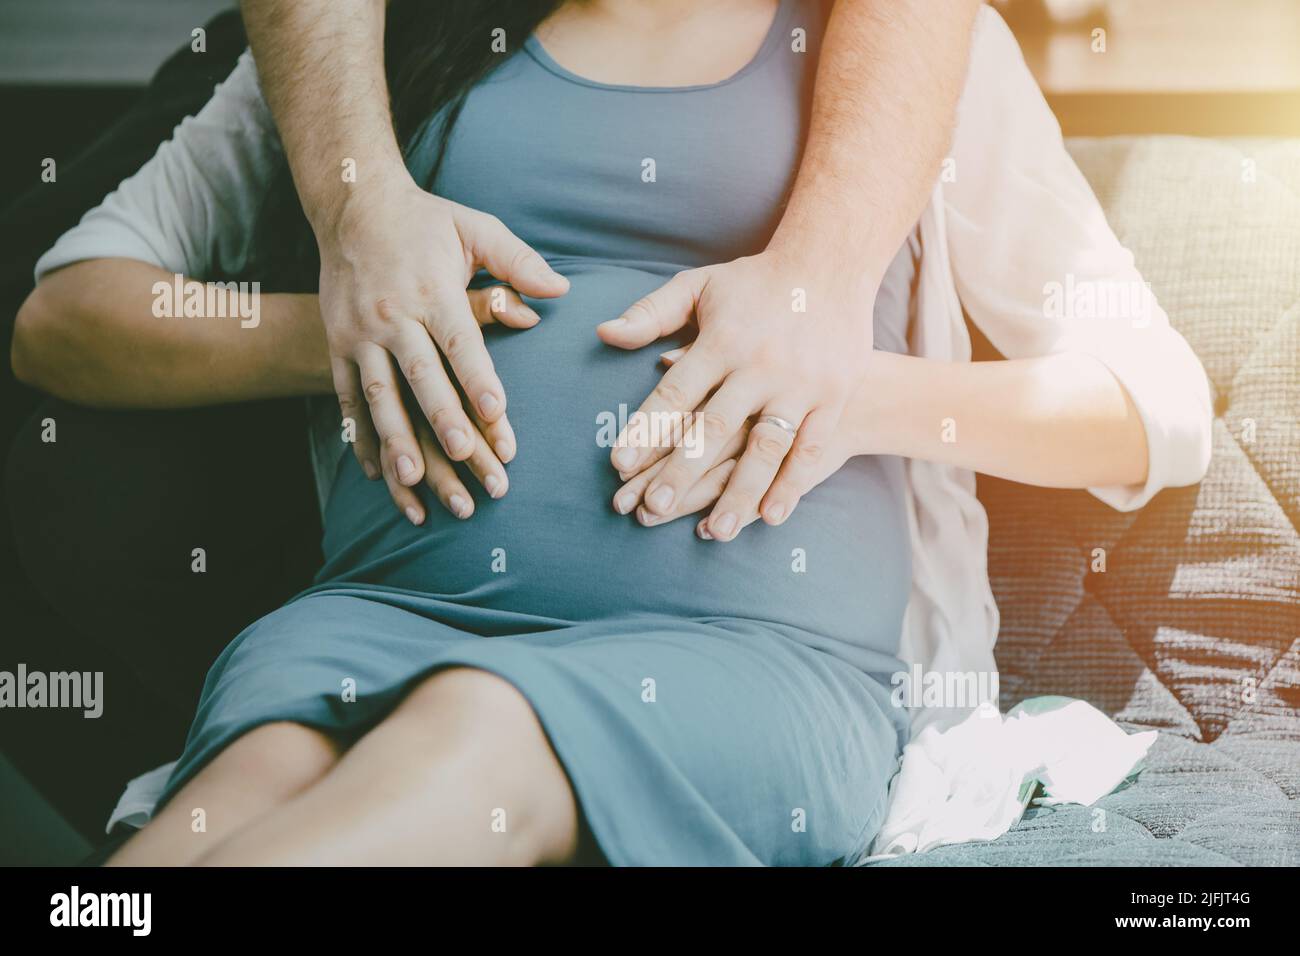 Grossesse femme maternité nouveau bébé maman avec mari housse protège pour amour nouveau concept de famille. Banque D'Images